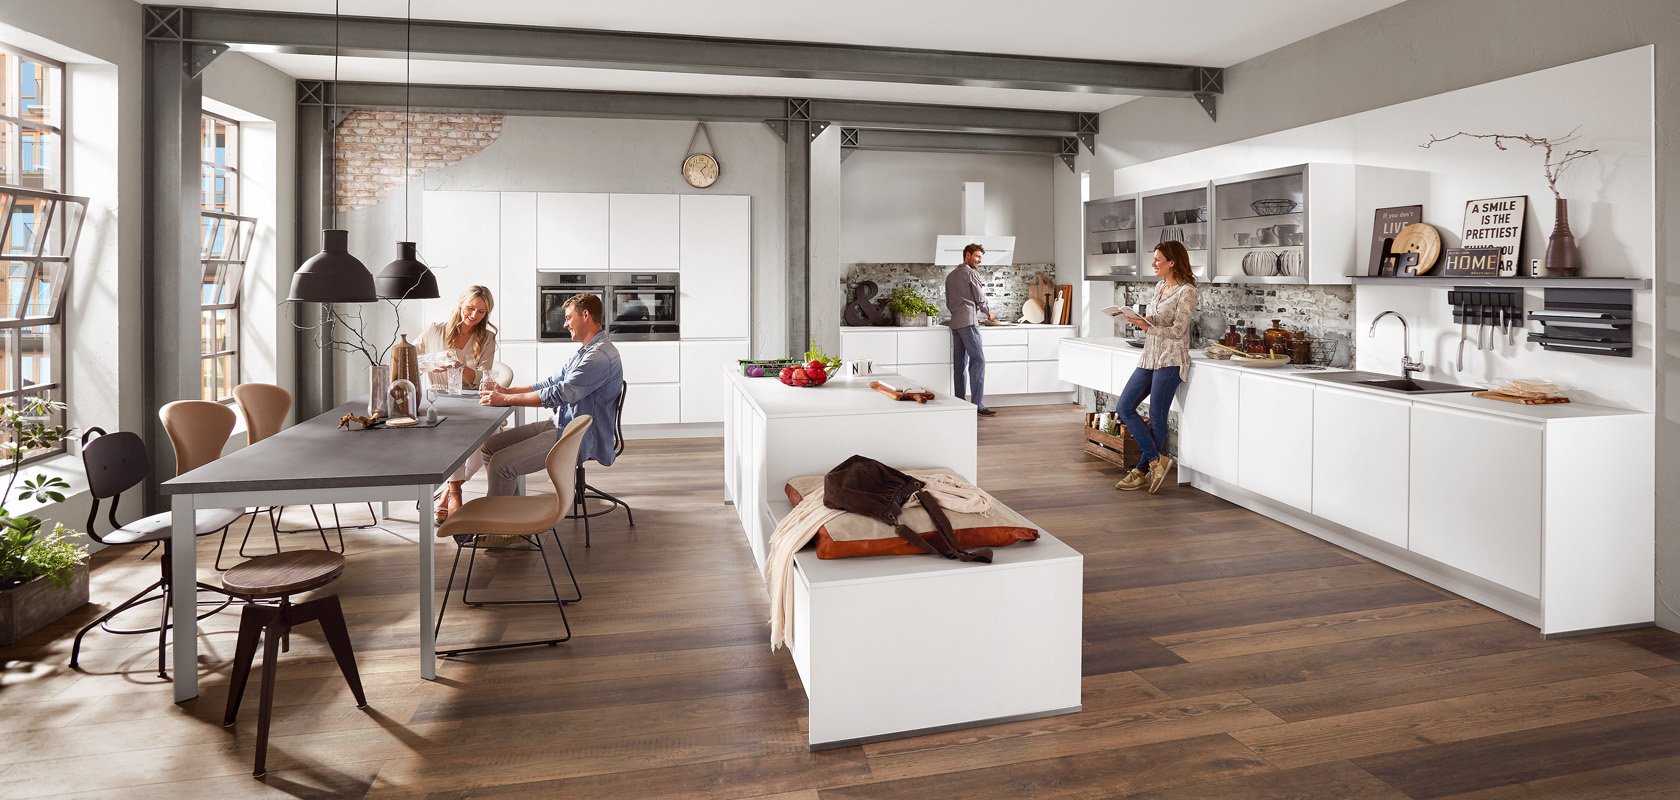 Espaciosa cocina moderna con un área de comedor que muestra a amigos animados disfrutando de una comida, con la luz natural realzando el diseño interior contemporáneo.